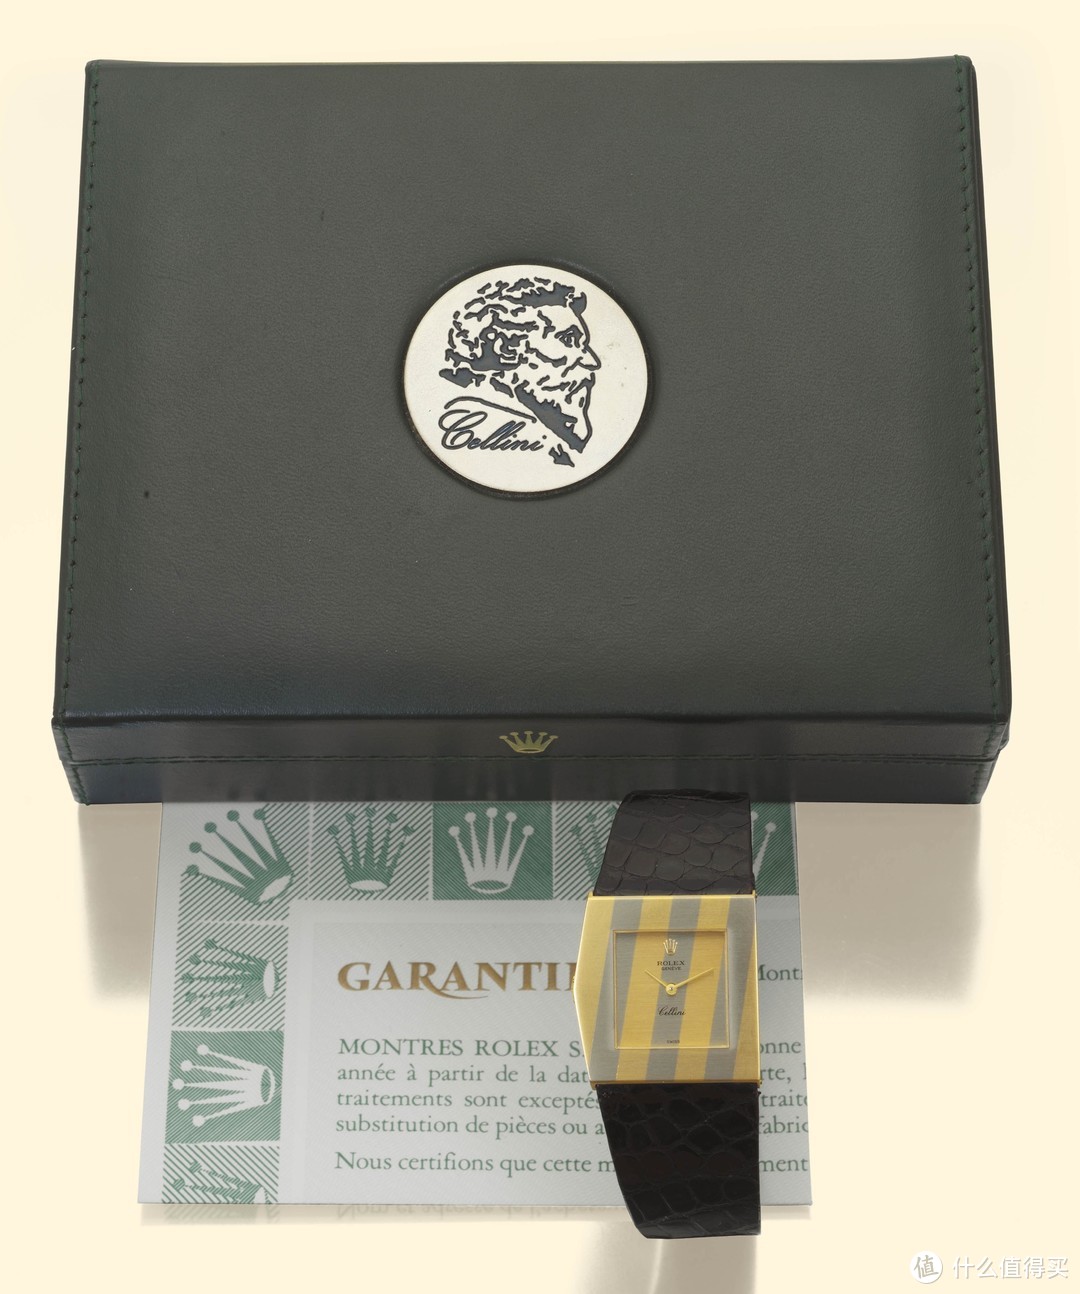 劳力士切利尼“迈达斯国王”手表，产于上世纪 80 年代， 属于稀有型号，不对称五边形黄金表壳，俗称“左口鱼”， 尺寸为 28 x 28 毫米，厚度为 5.5 毫米，表盘上的条纹 装饰为“fausses-côtes”装饰，表盒上有 Benvenuto Cellini 本人的头像，在 2004 年 10 月 24 日安蒂古伦拍 卖中以含佣价 3680 瑞士法郎价格成交。